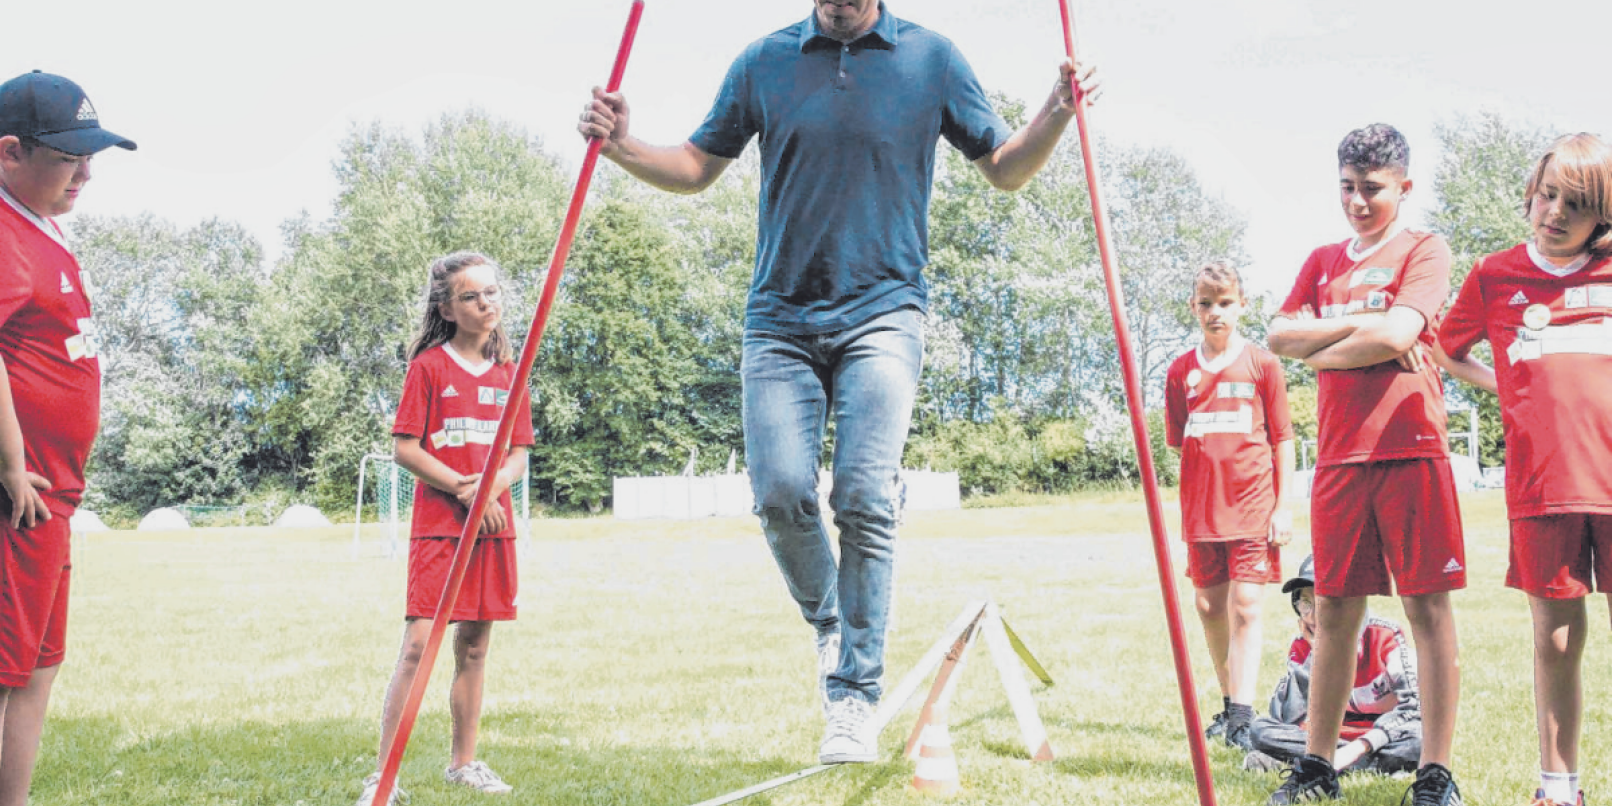 Fußball-Weltmeister Philipp Lahm setzt sich mit der nach ihm benannten Stiftung für benachteiligte Kinder und Jugendliche in den Bereichen Bildung, Sport und Gesundheit ein.